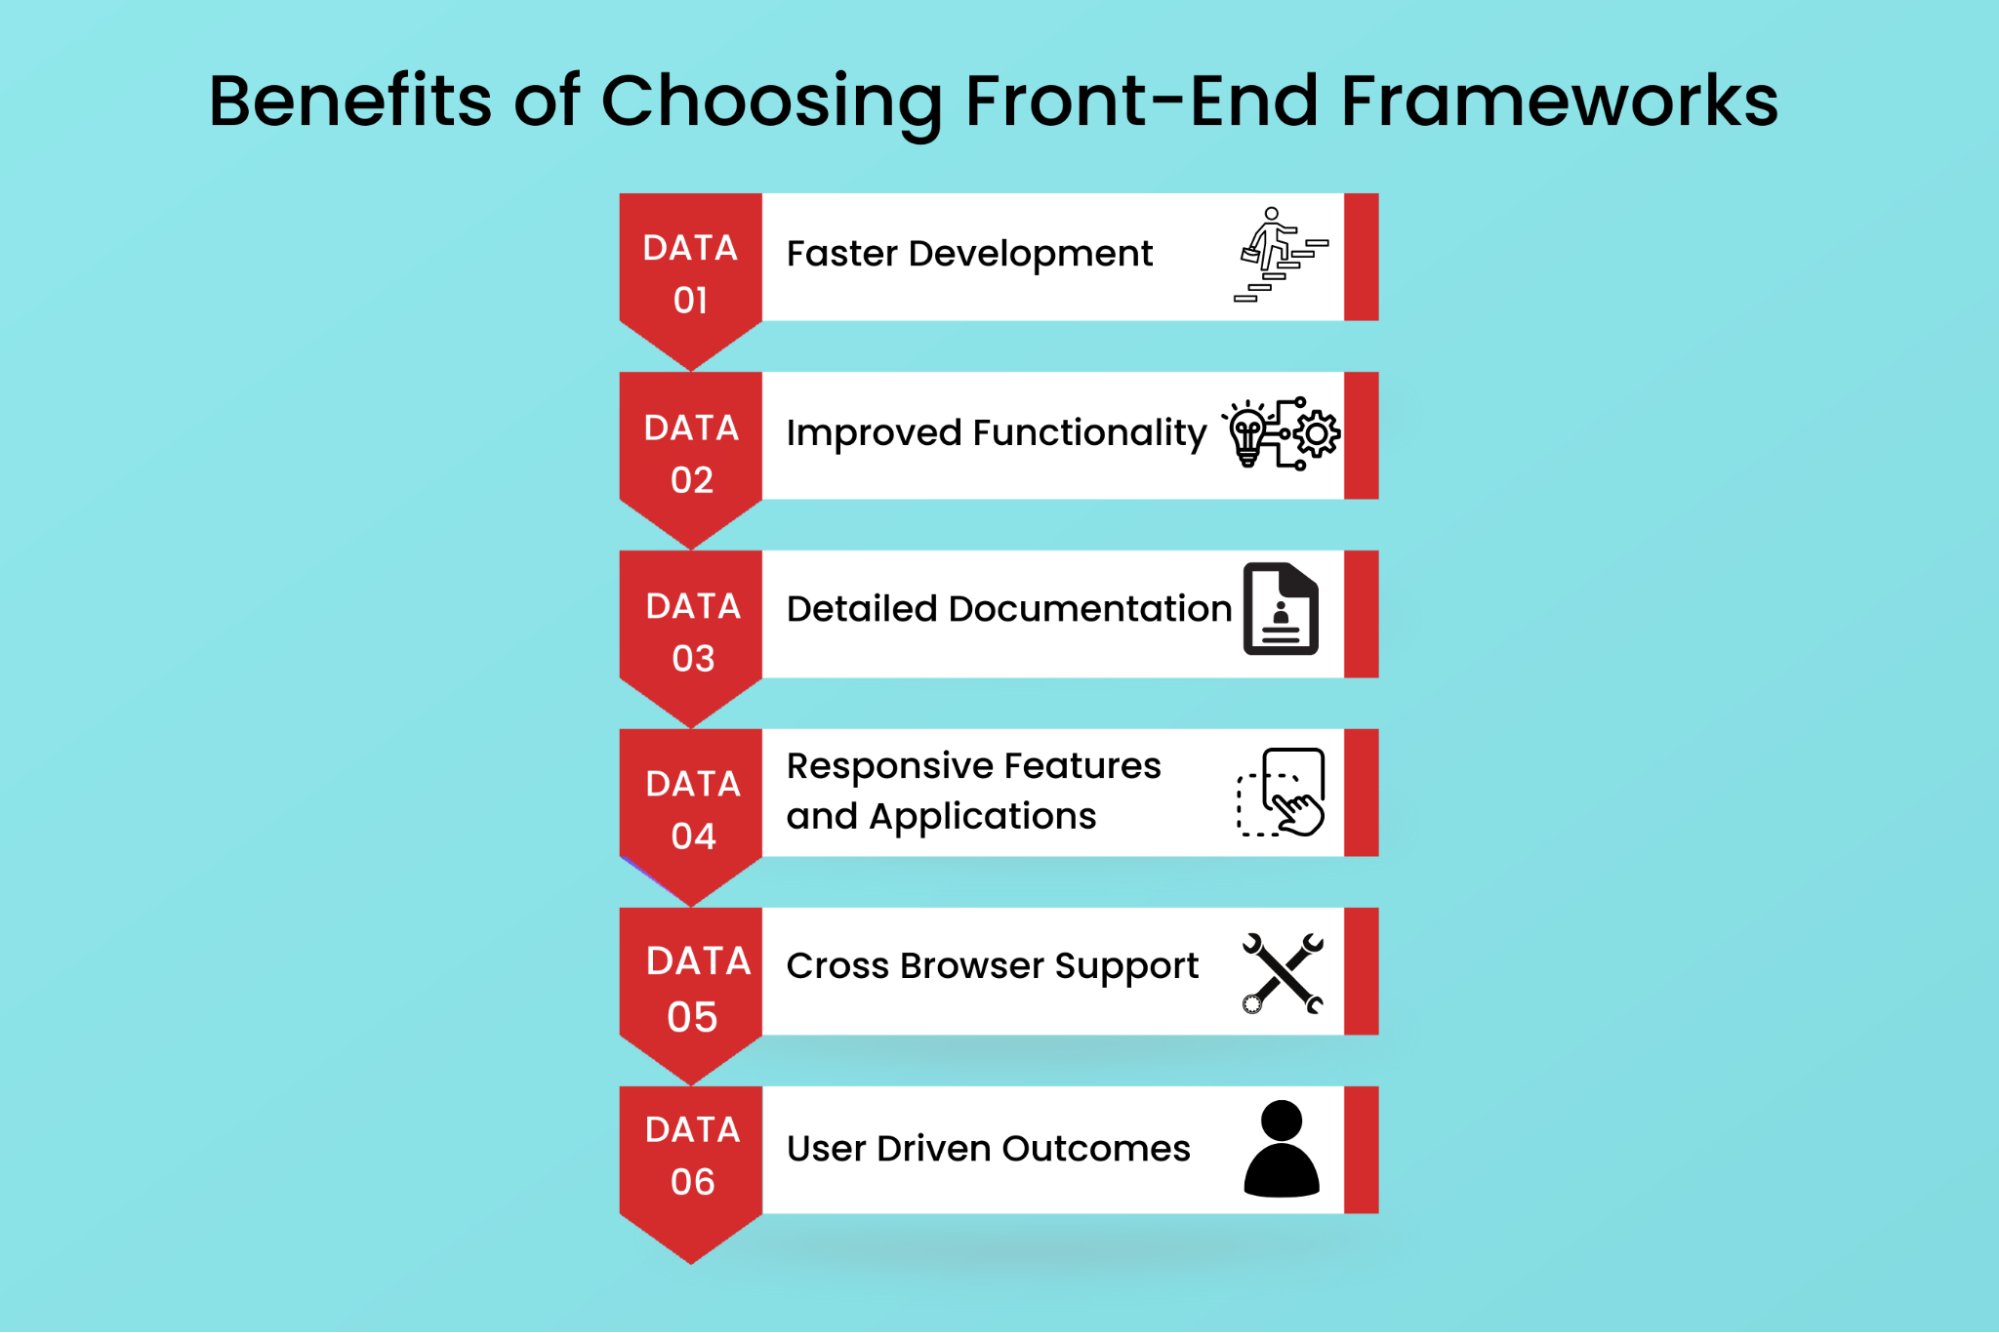 Benefits of Choosing Front-End Frameworks